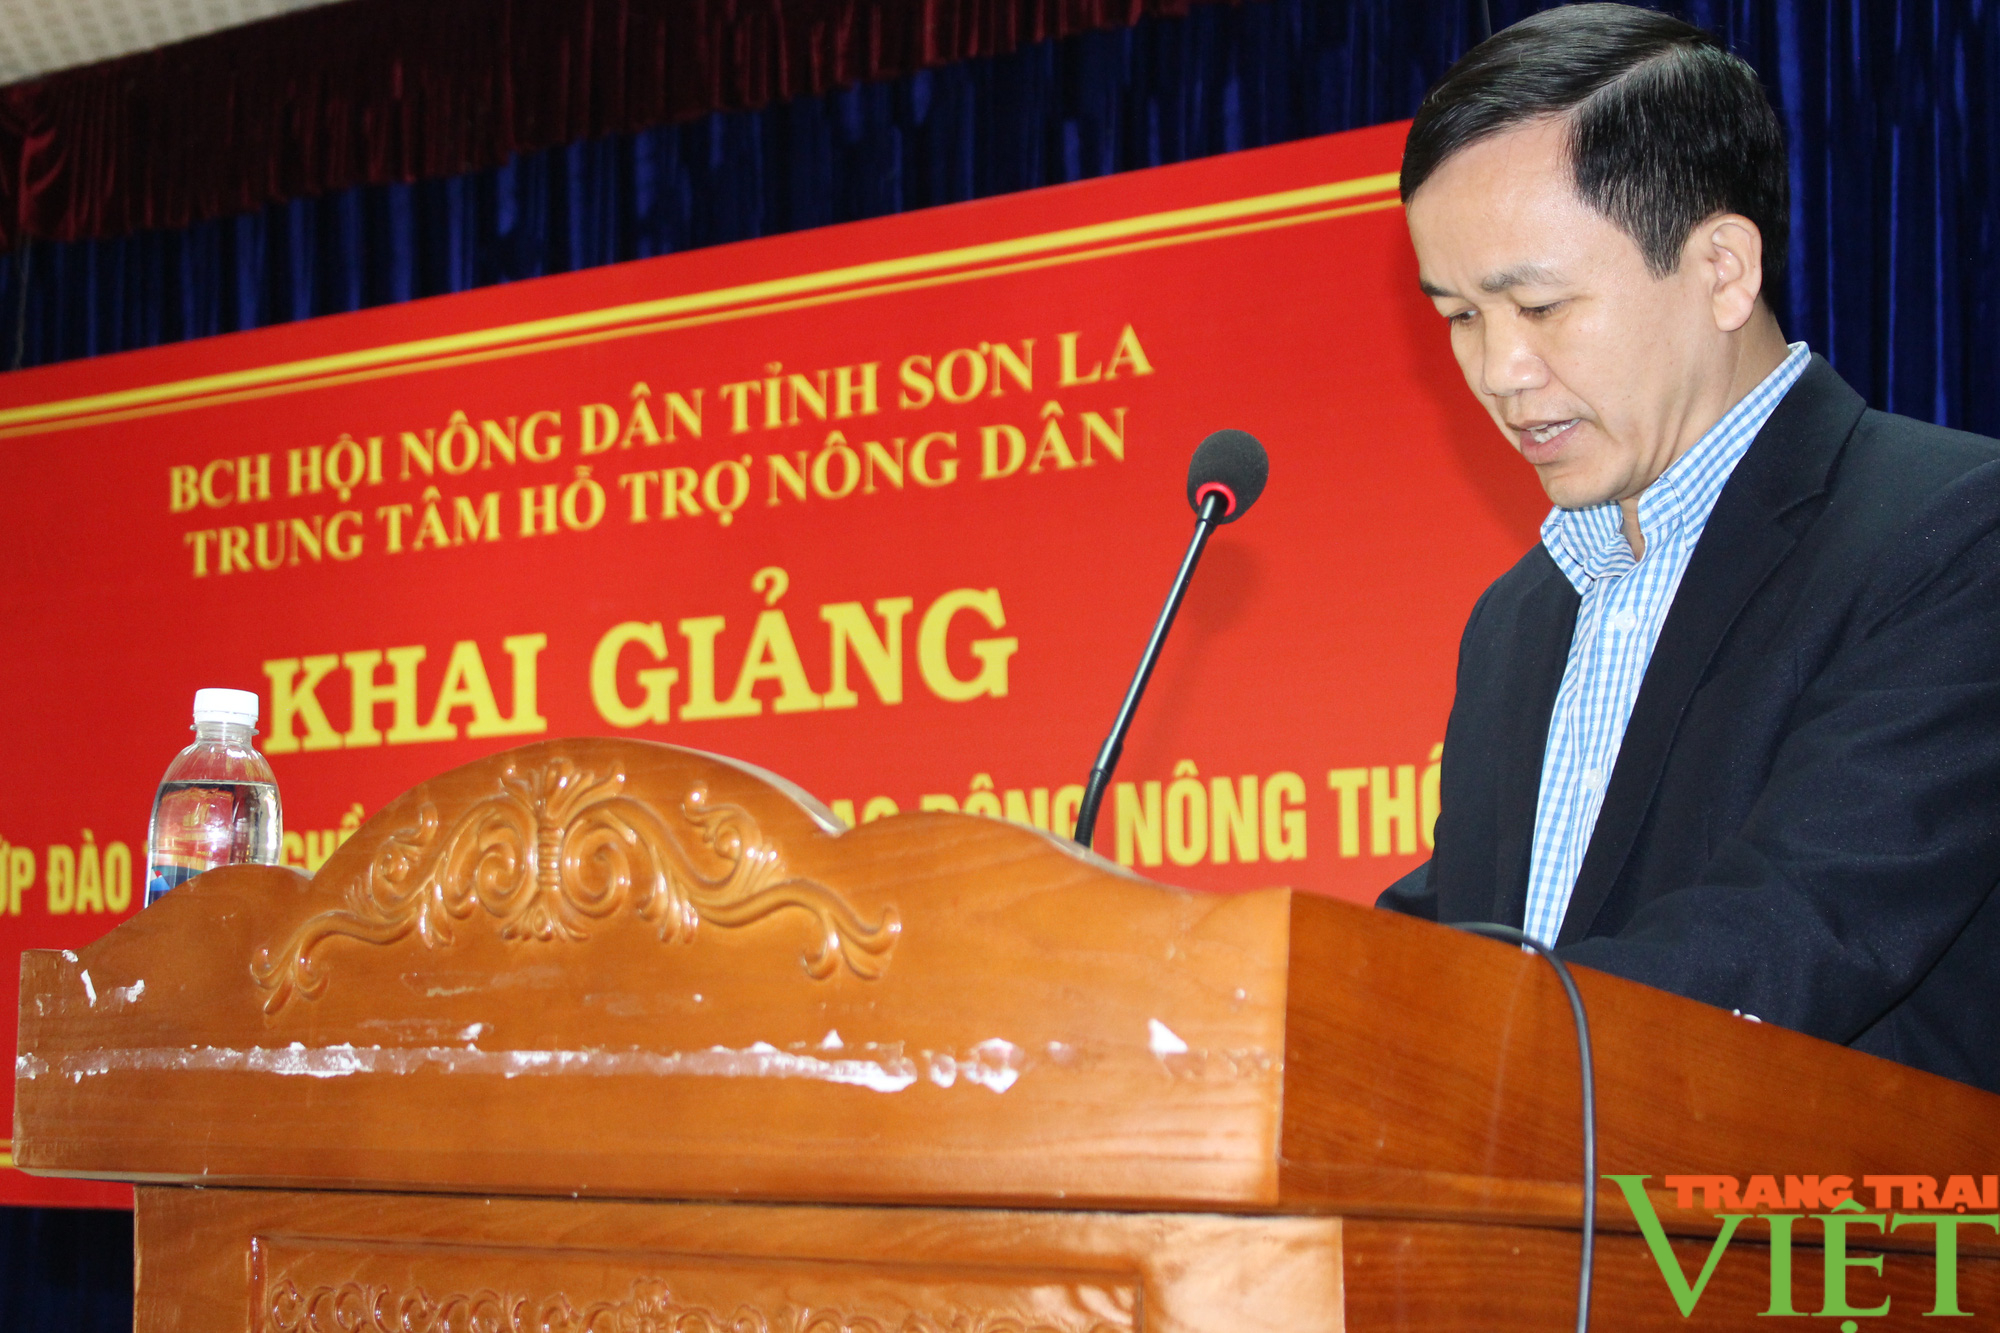 Hội Nông dân tỉnh Sơn La: Khai giảng lớp đào tạo ngắn hạn cho lao động nông thôn - Ảnh 3.